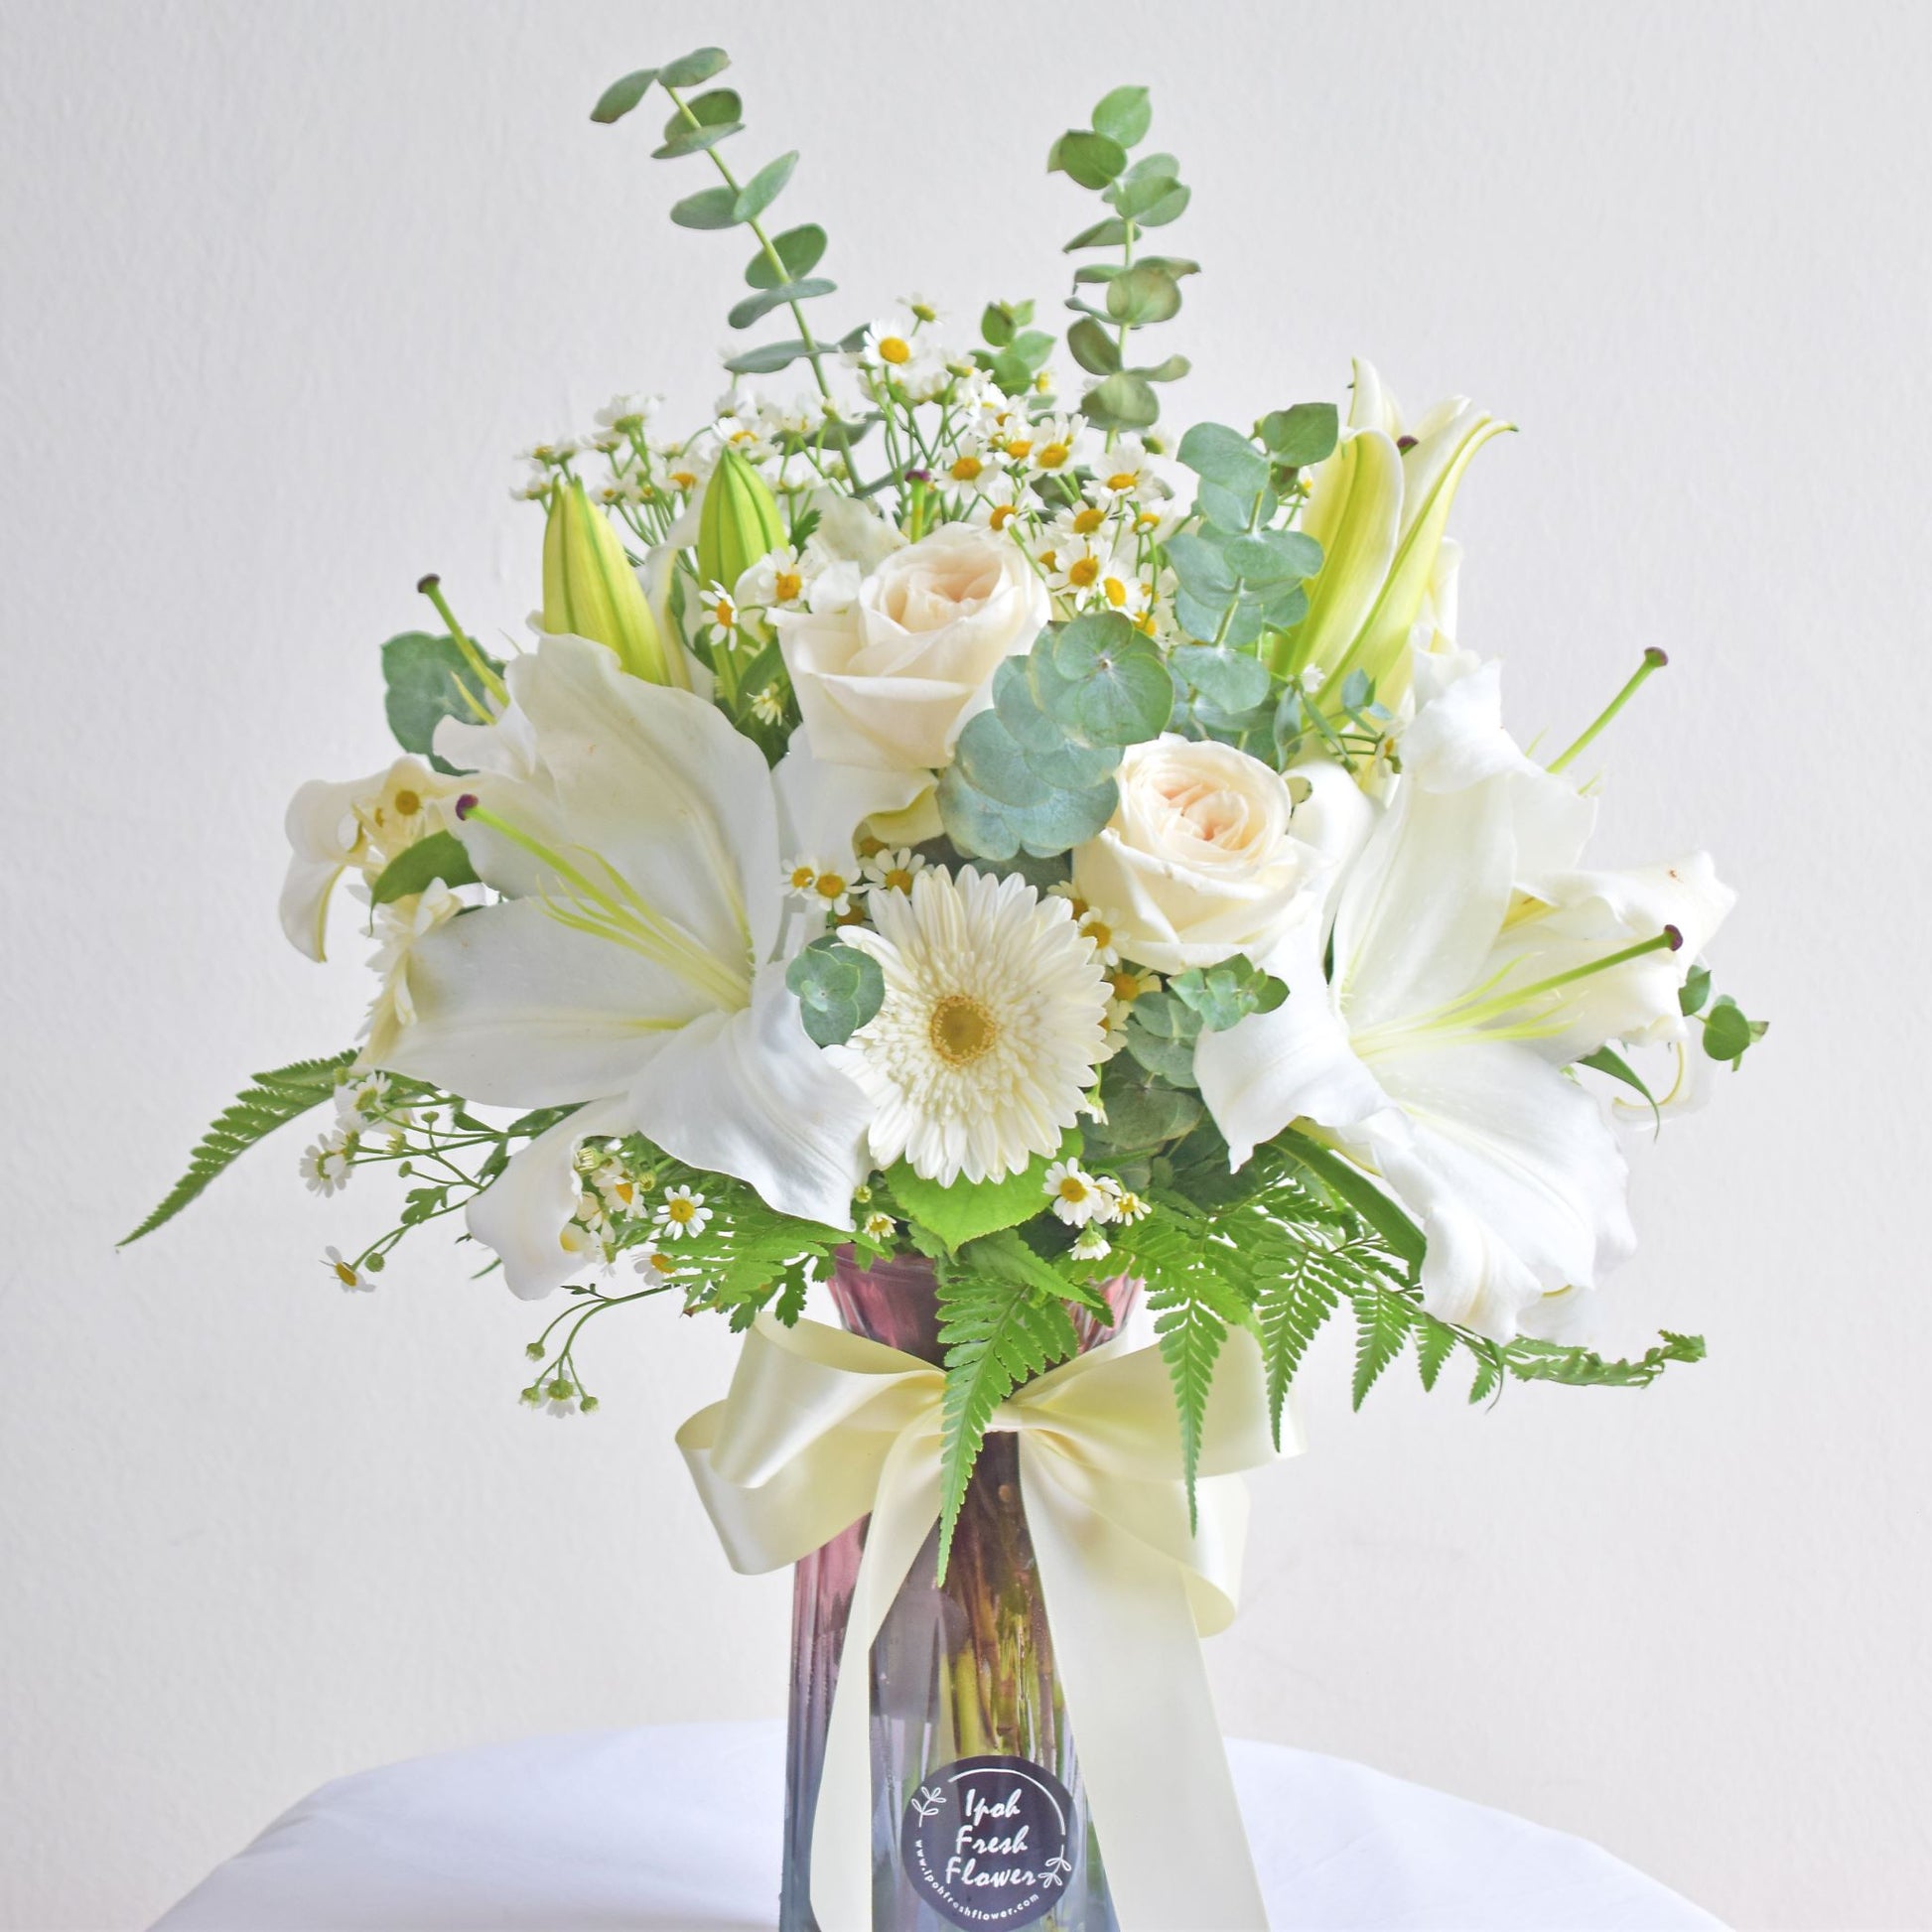 Maryland Lily Vase Arrangement| Fresh Flower In A Vase